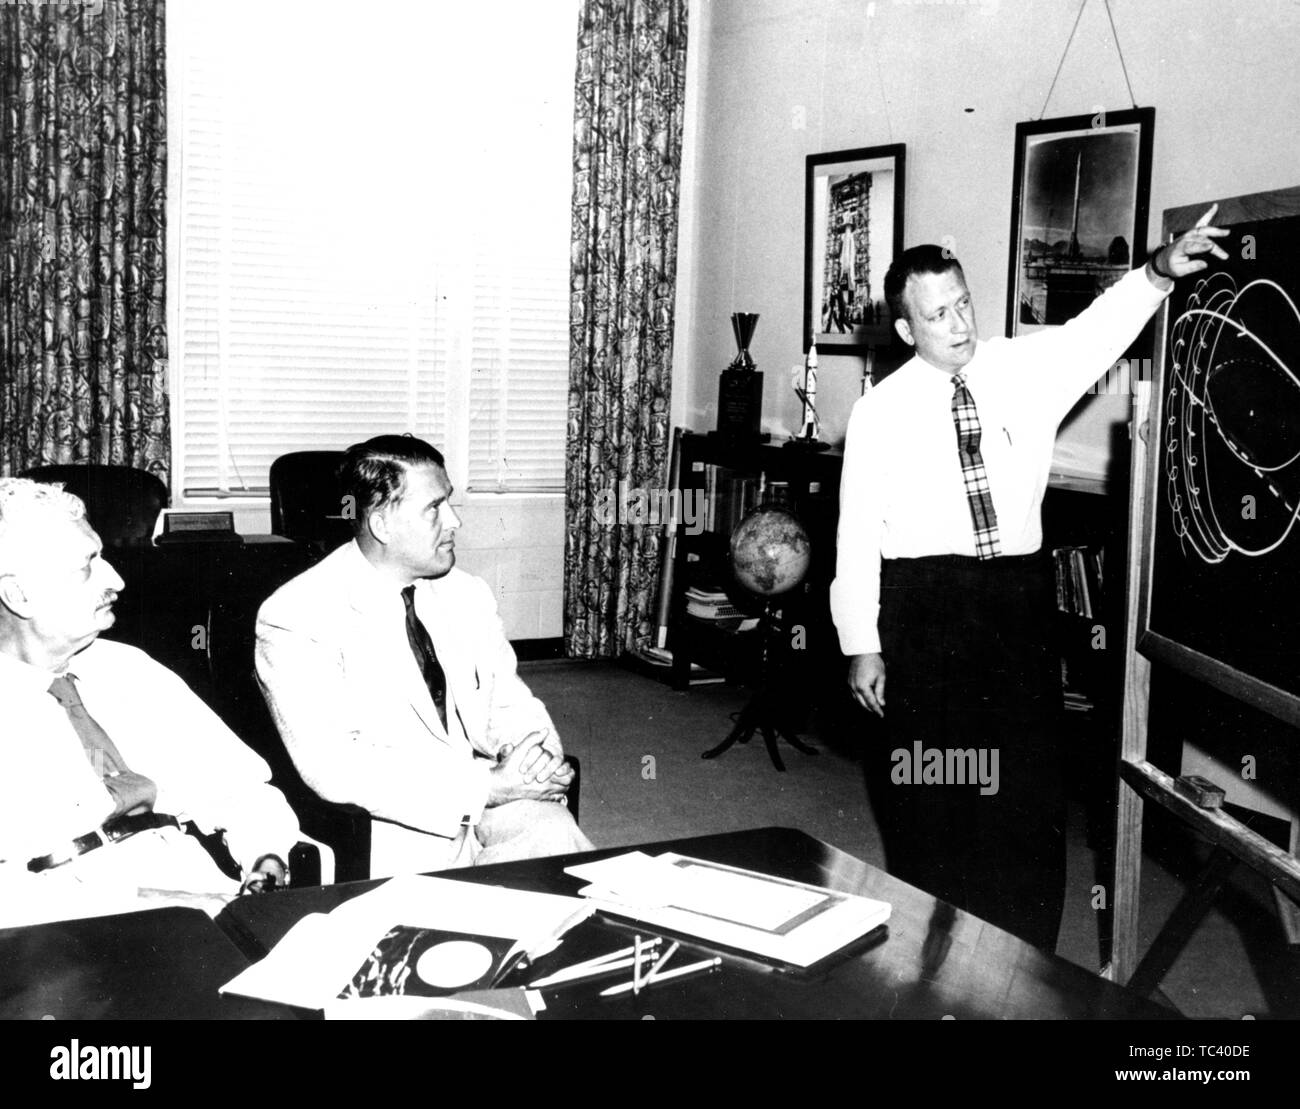 Charles Lundquist presenta traiettorie orbitali a Hermann Oberth e Wernher von Braun all'esercito missile balistico agenzia in Huntsville, Alabama, 28 giugno 1958. Immagine cortesia Nazionale Aeronautica e Spaziale Administration (NASA). () Foto Stock